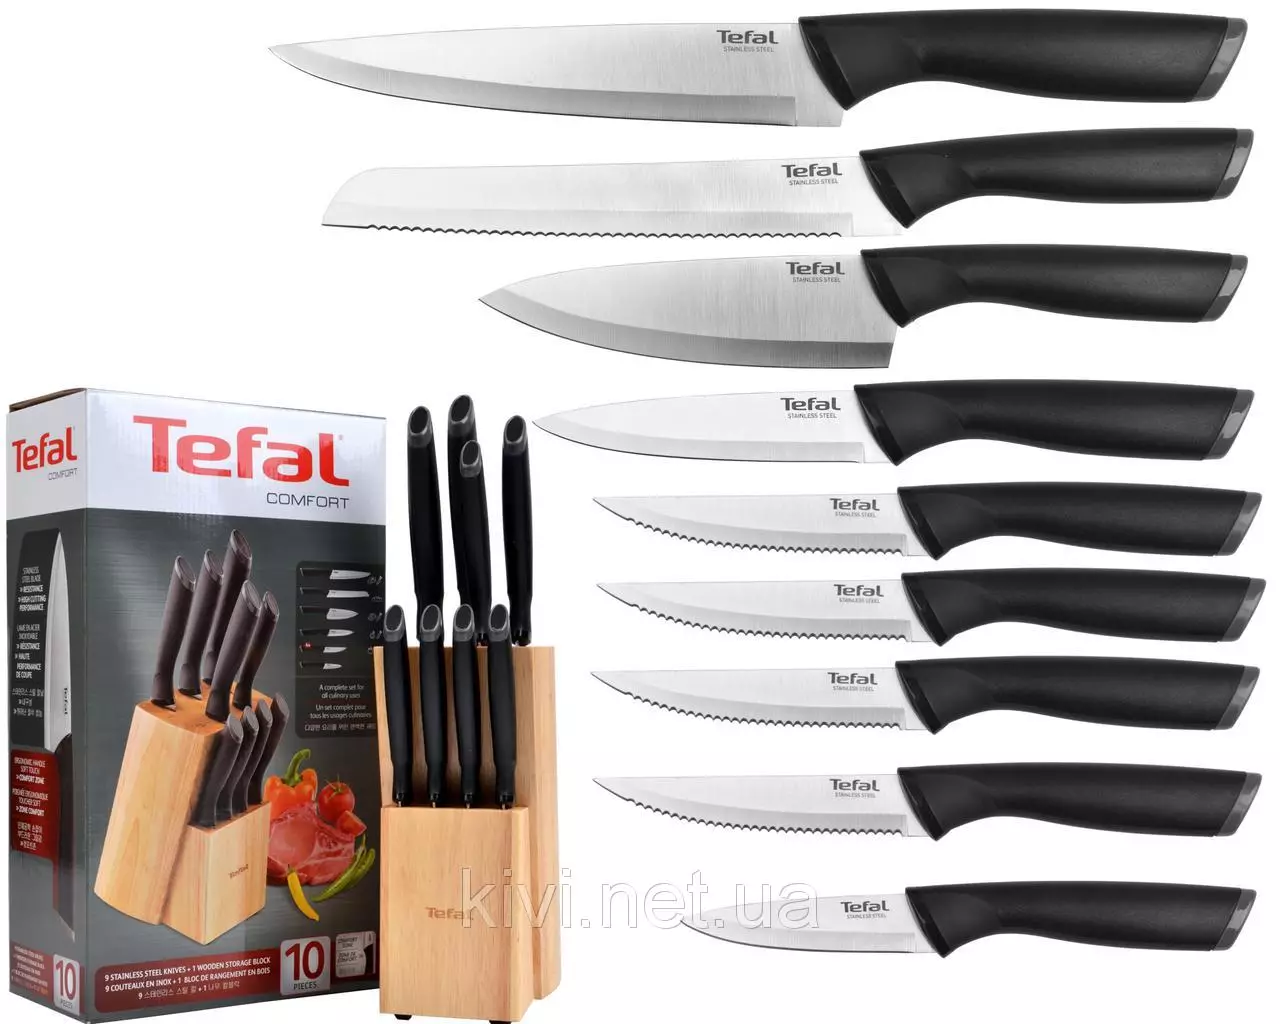 Tefal դանակներ. Խոհանոցային դանակների ակնարկ, նկարագրության փորձաքննություն եւ այլ շարք: Հաճախորդների ակնարկներ 23462_14